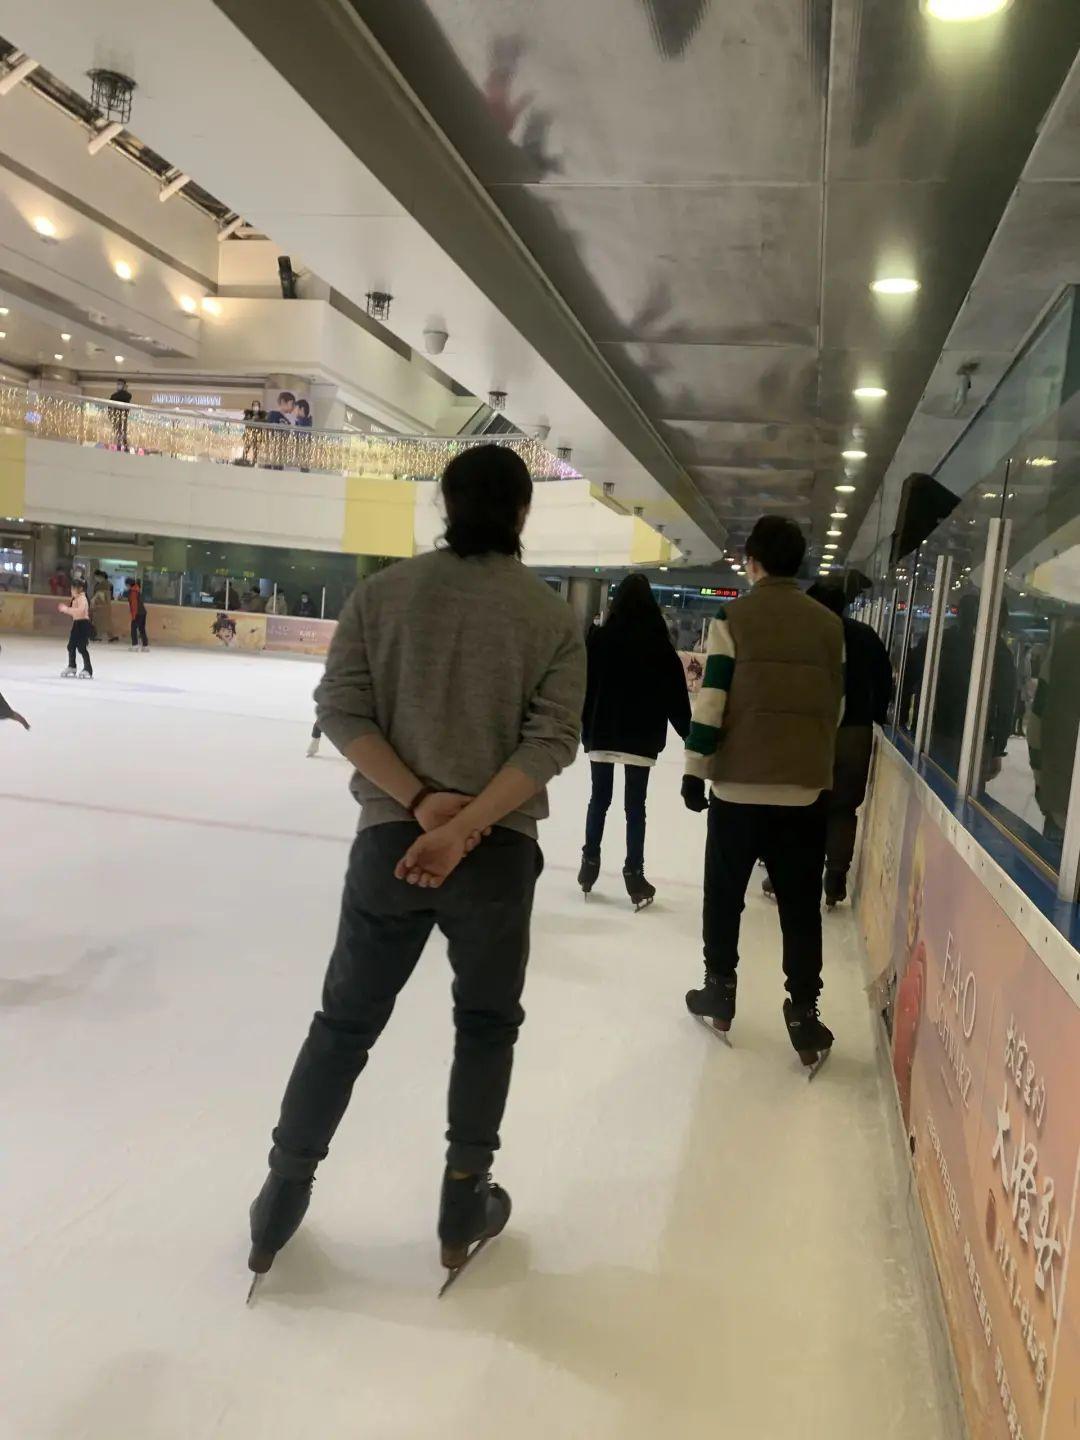 男子在北京地铁站尾随女乘客溜进女厕偷拍遭围追堵截 已被拘留